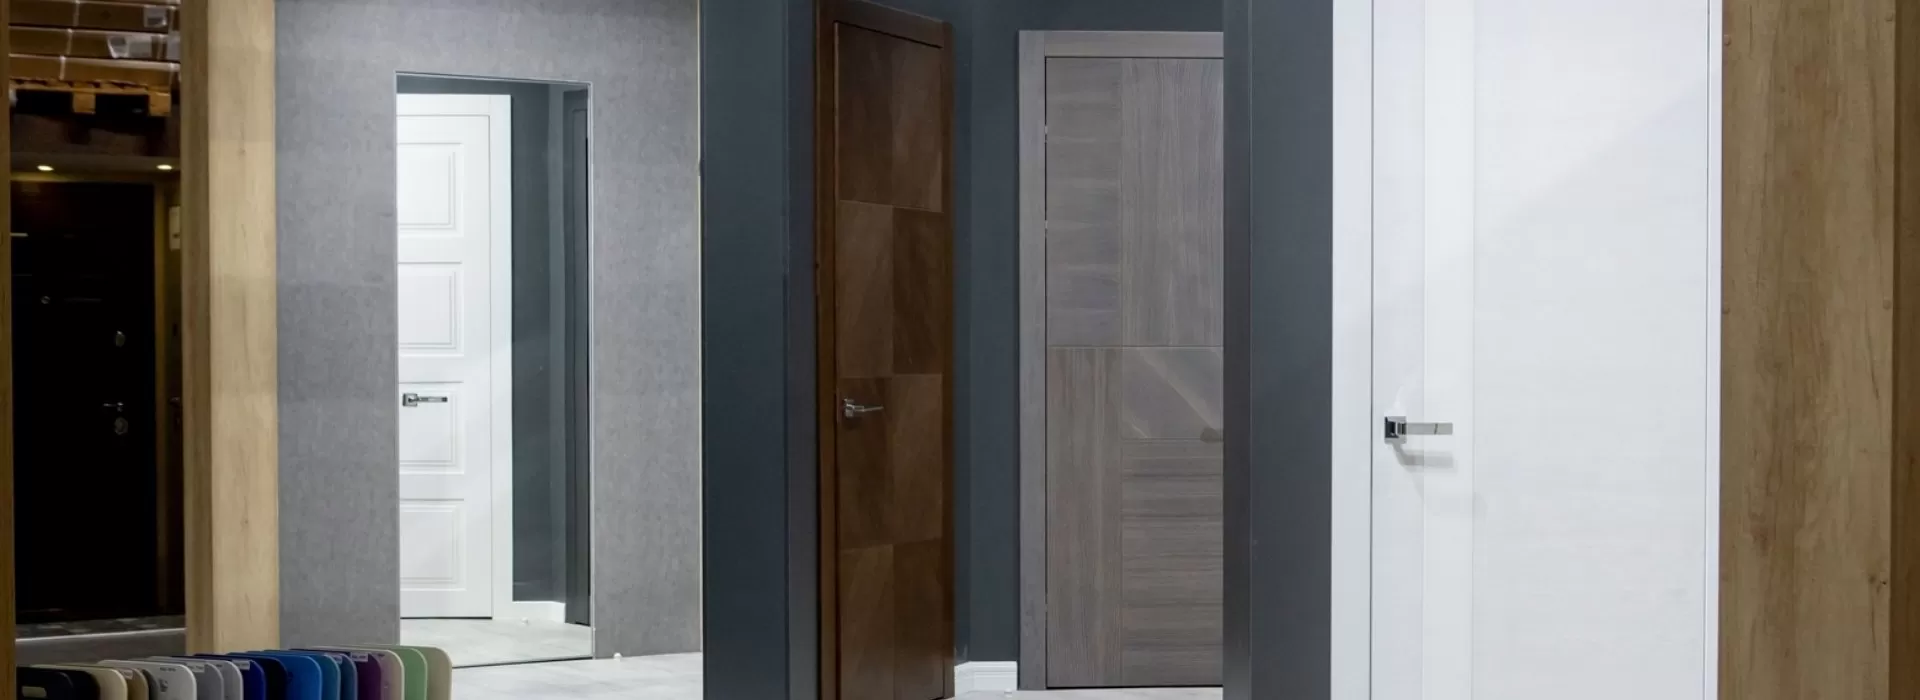 Série interierových dveří Alumi Vertik S